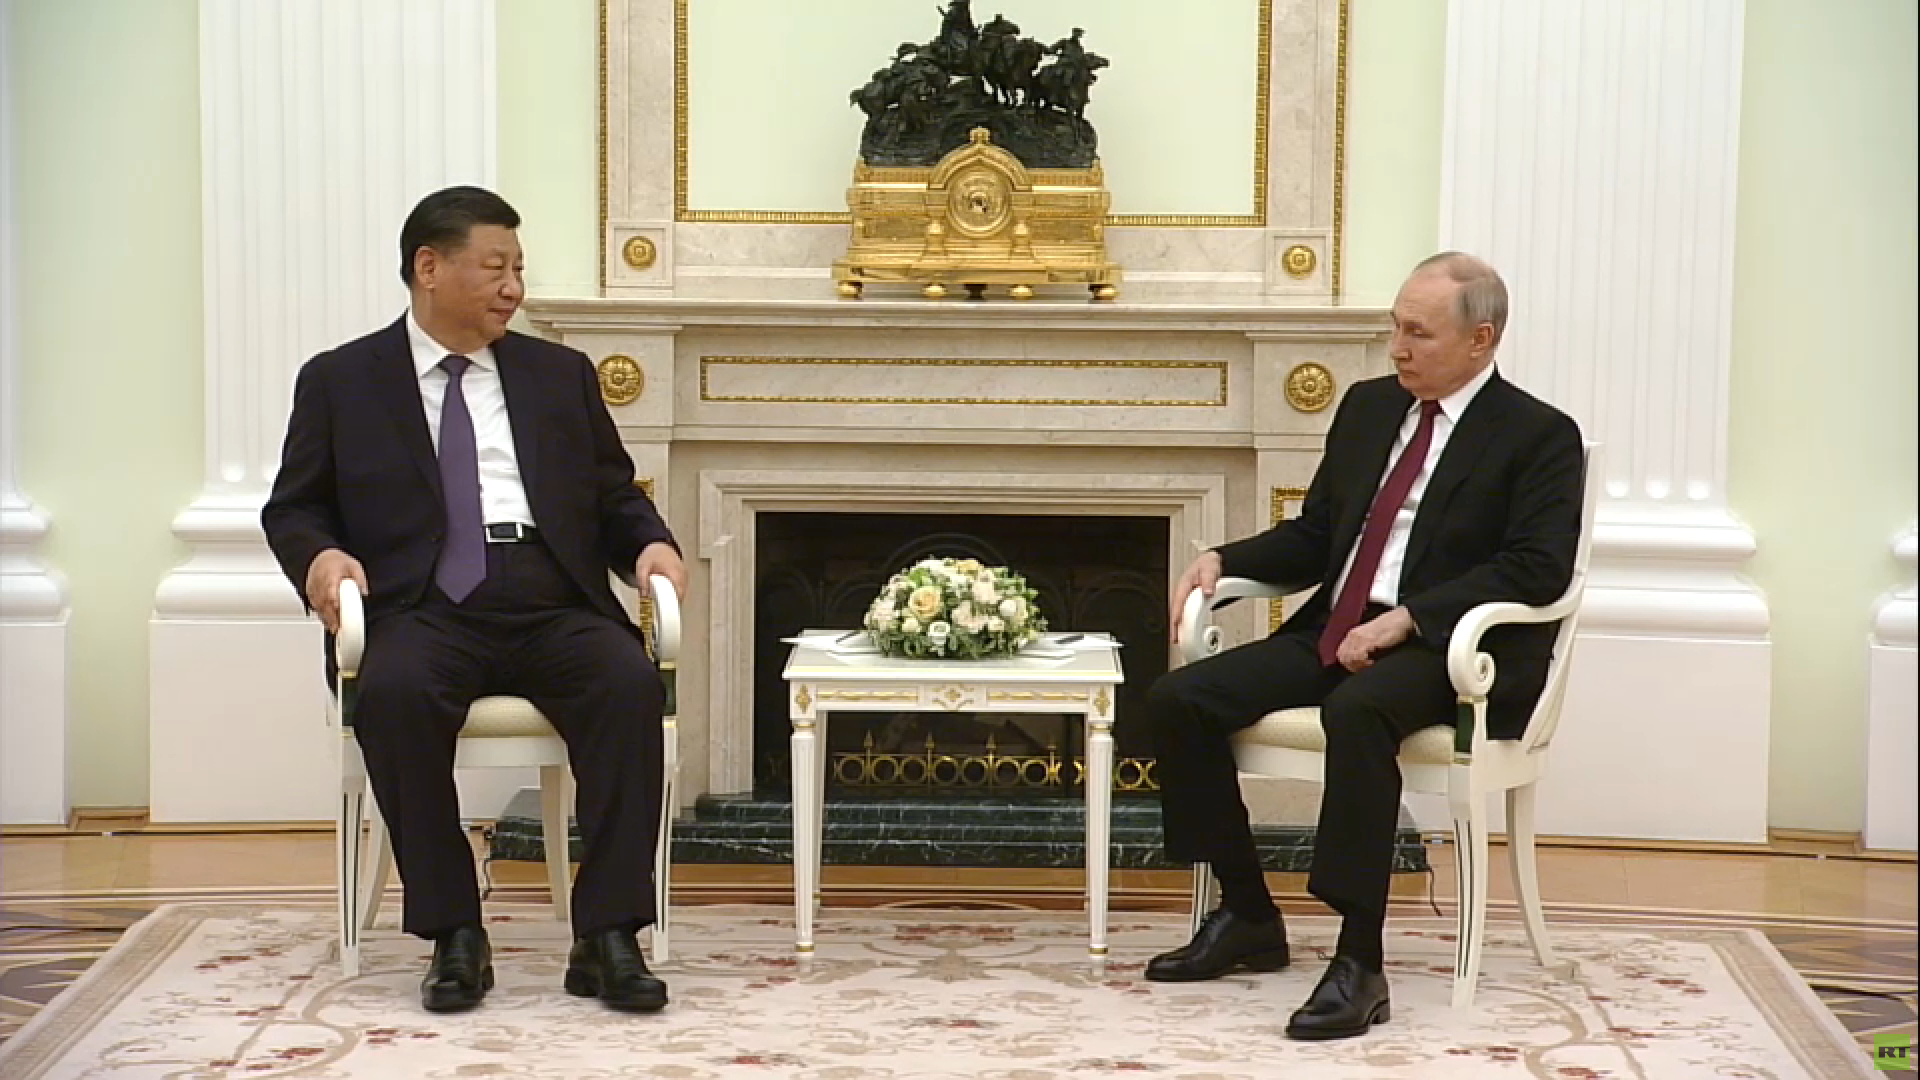 الرئيس الصيني لبوتين: نحن شركاء بالتعاون الاستراتيجي الشامل ويجب أن تكون العلاقات وثيقة بين البلدين